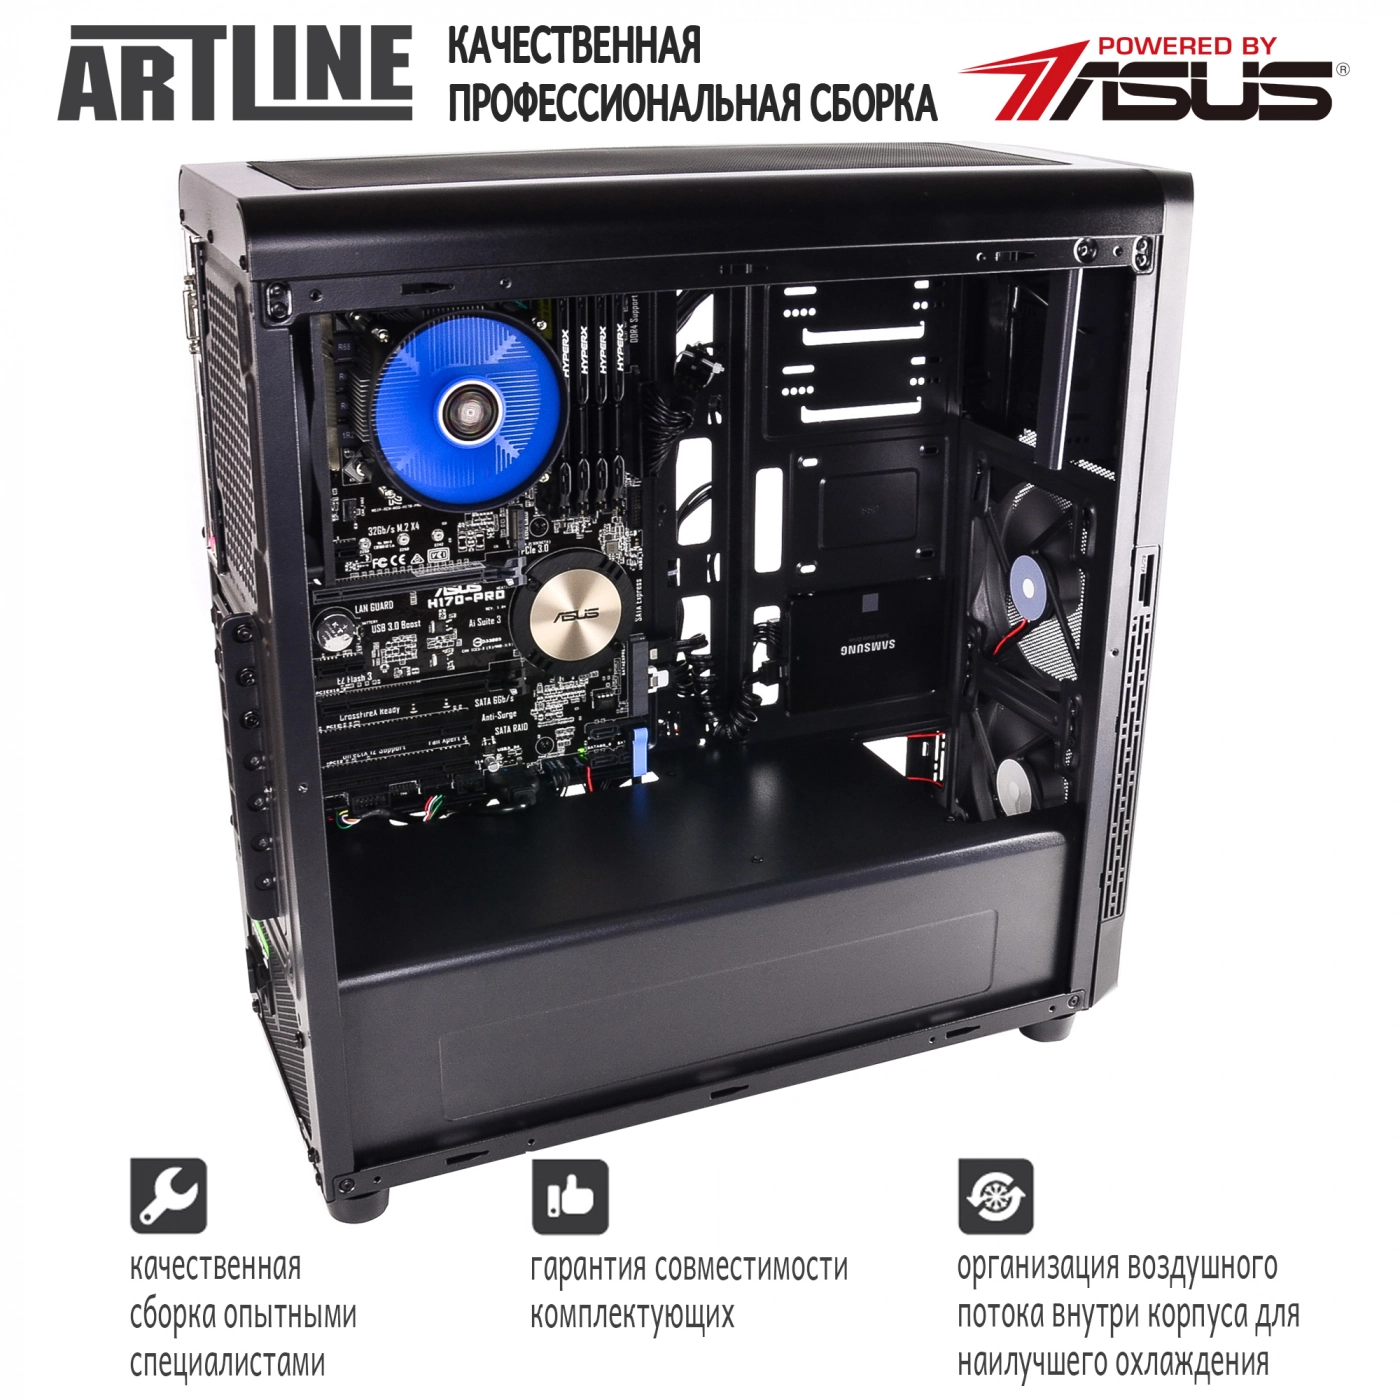 Купить Сервер ARTLINE Business T65v06 - фото 3